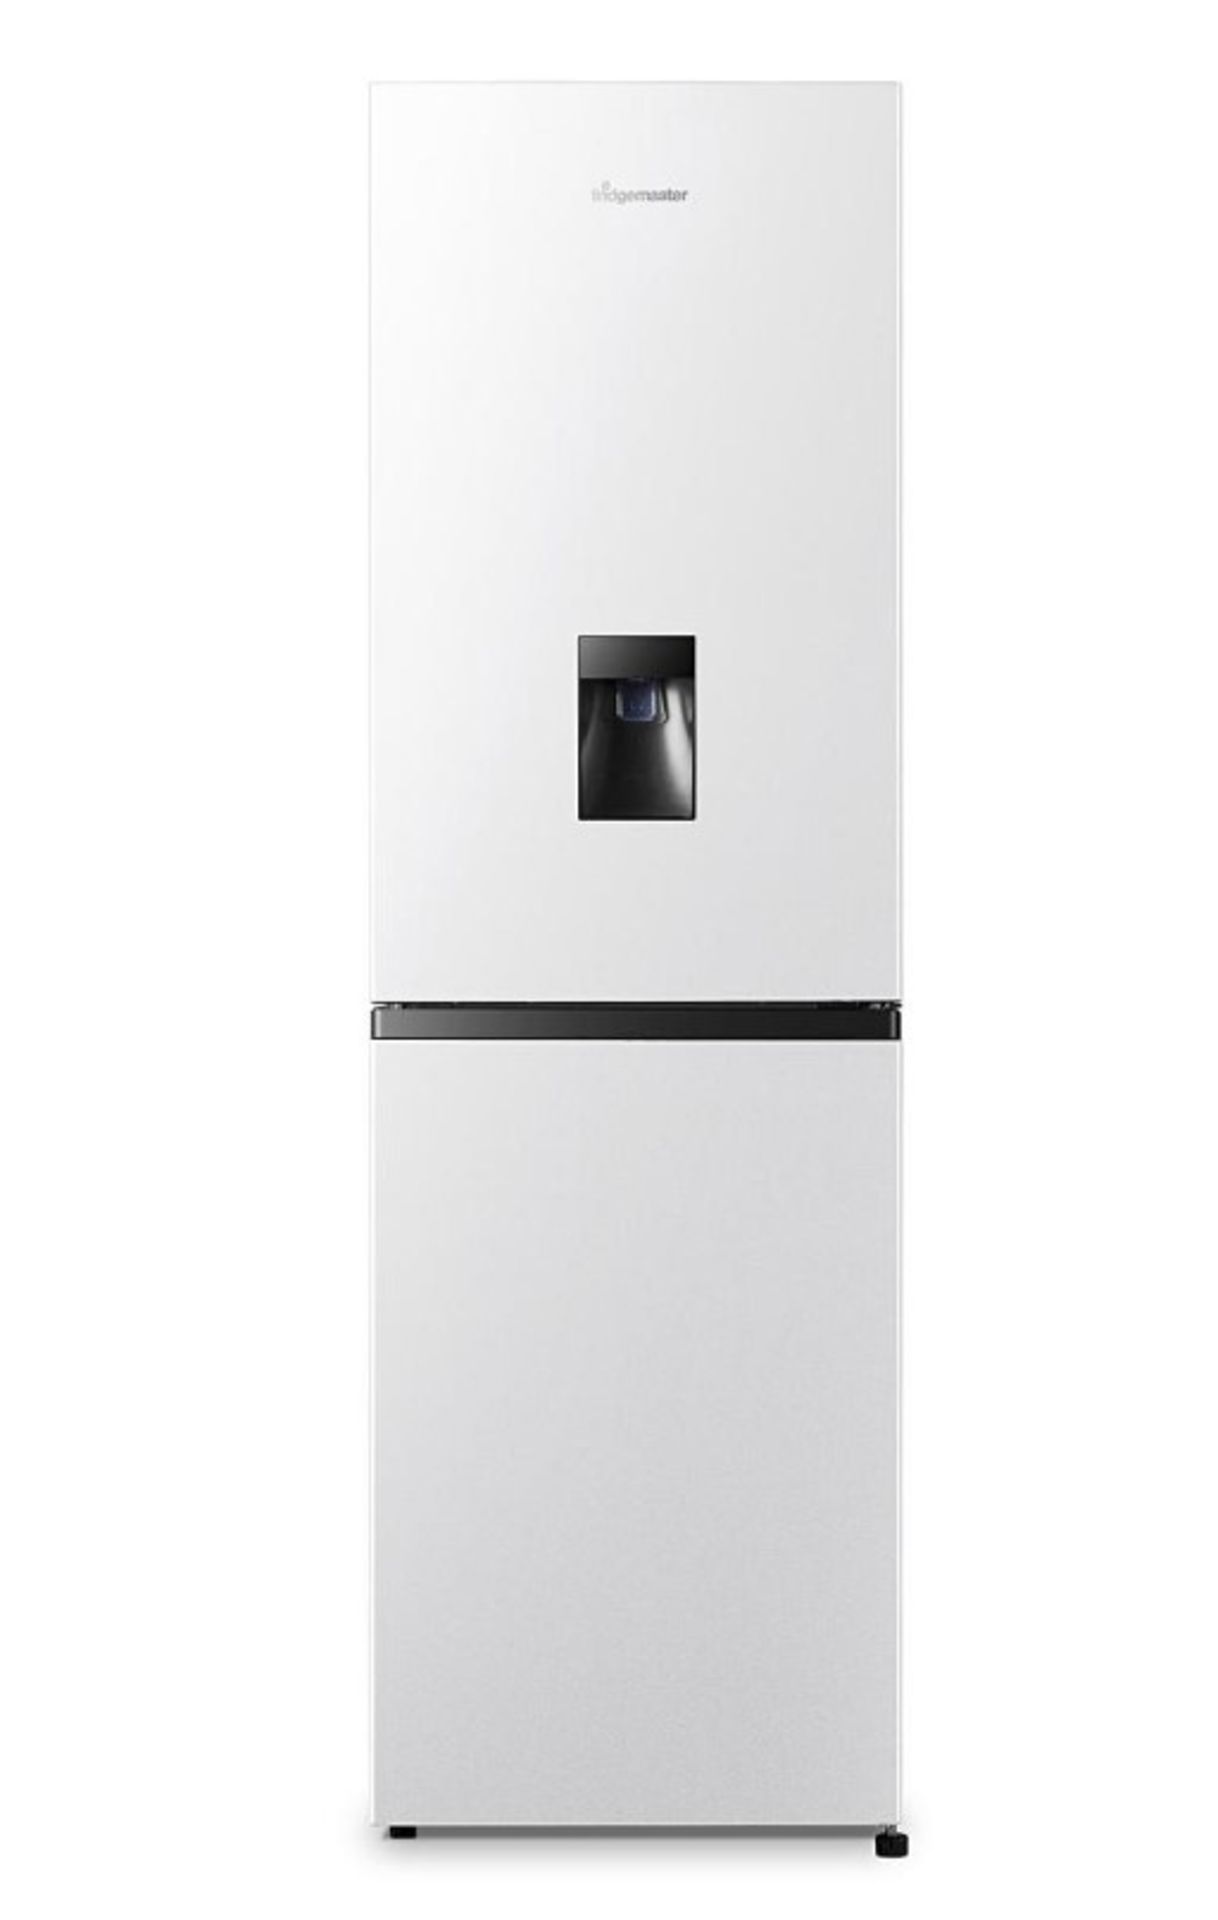 (P) RRP £319. Fridgemaster MC55240MDF Fridge Freezer with Water Dispenser _ White. (SKU: ZV0506/01)